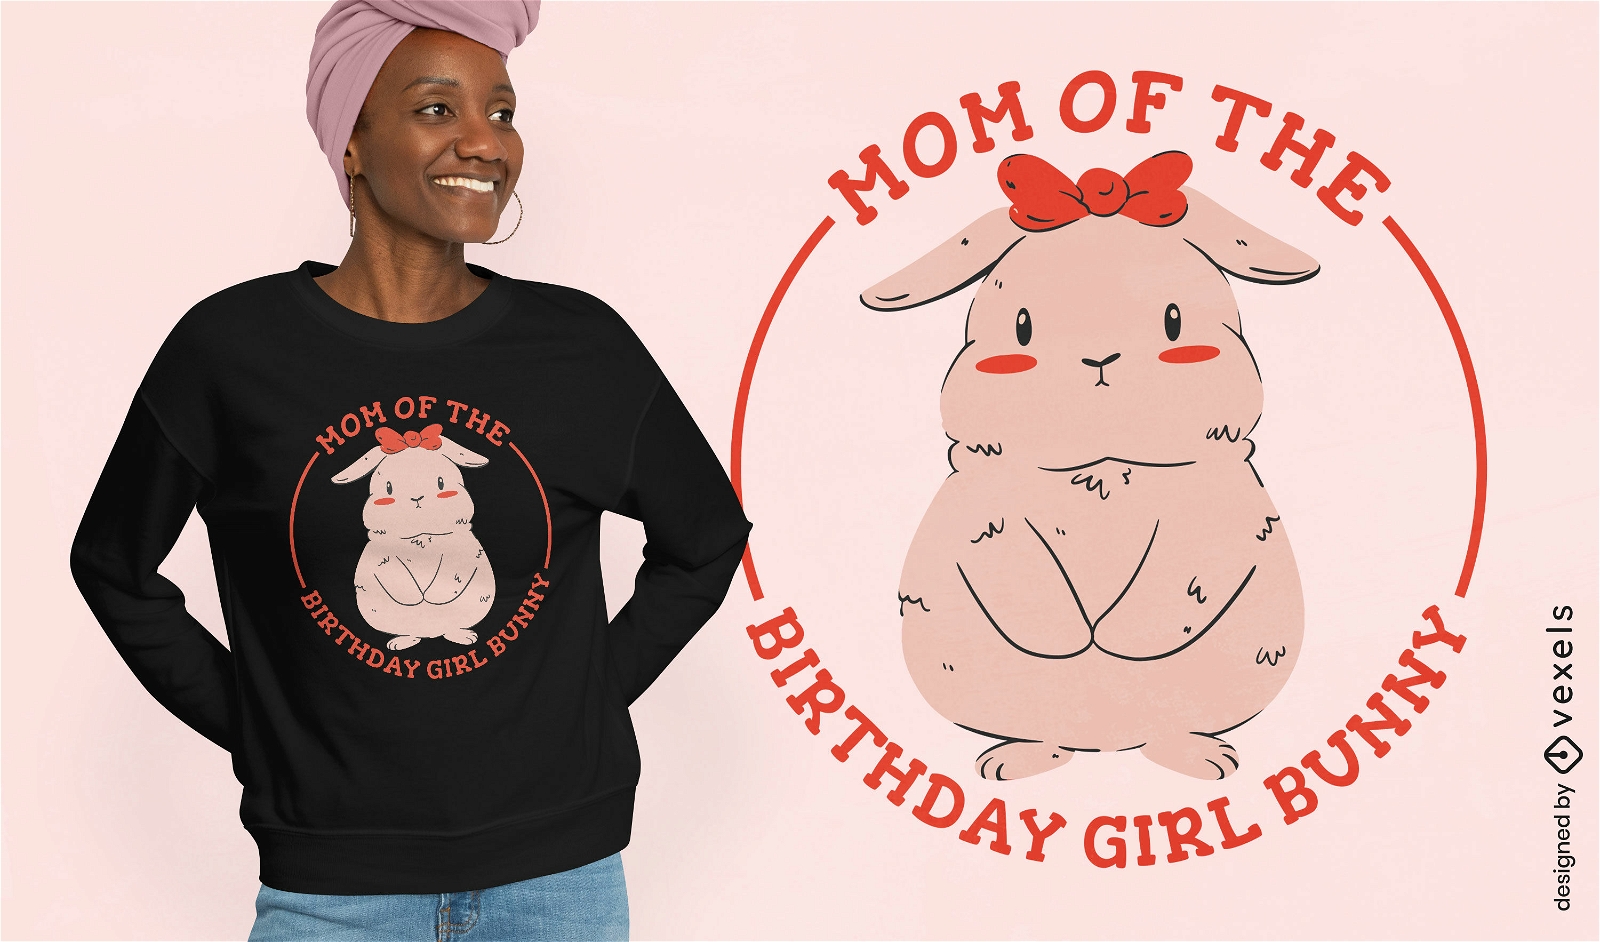 Mutter des Geburtstagskind-H?schen-T-Shirt-Designs